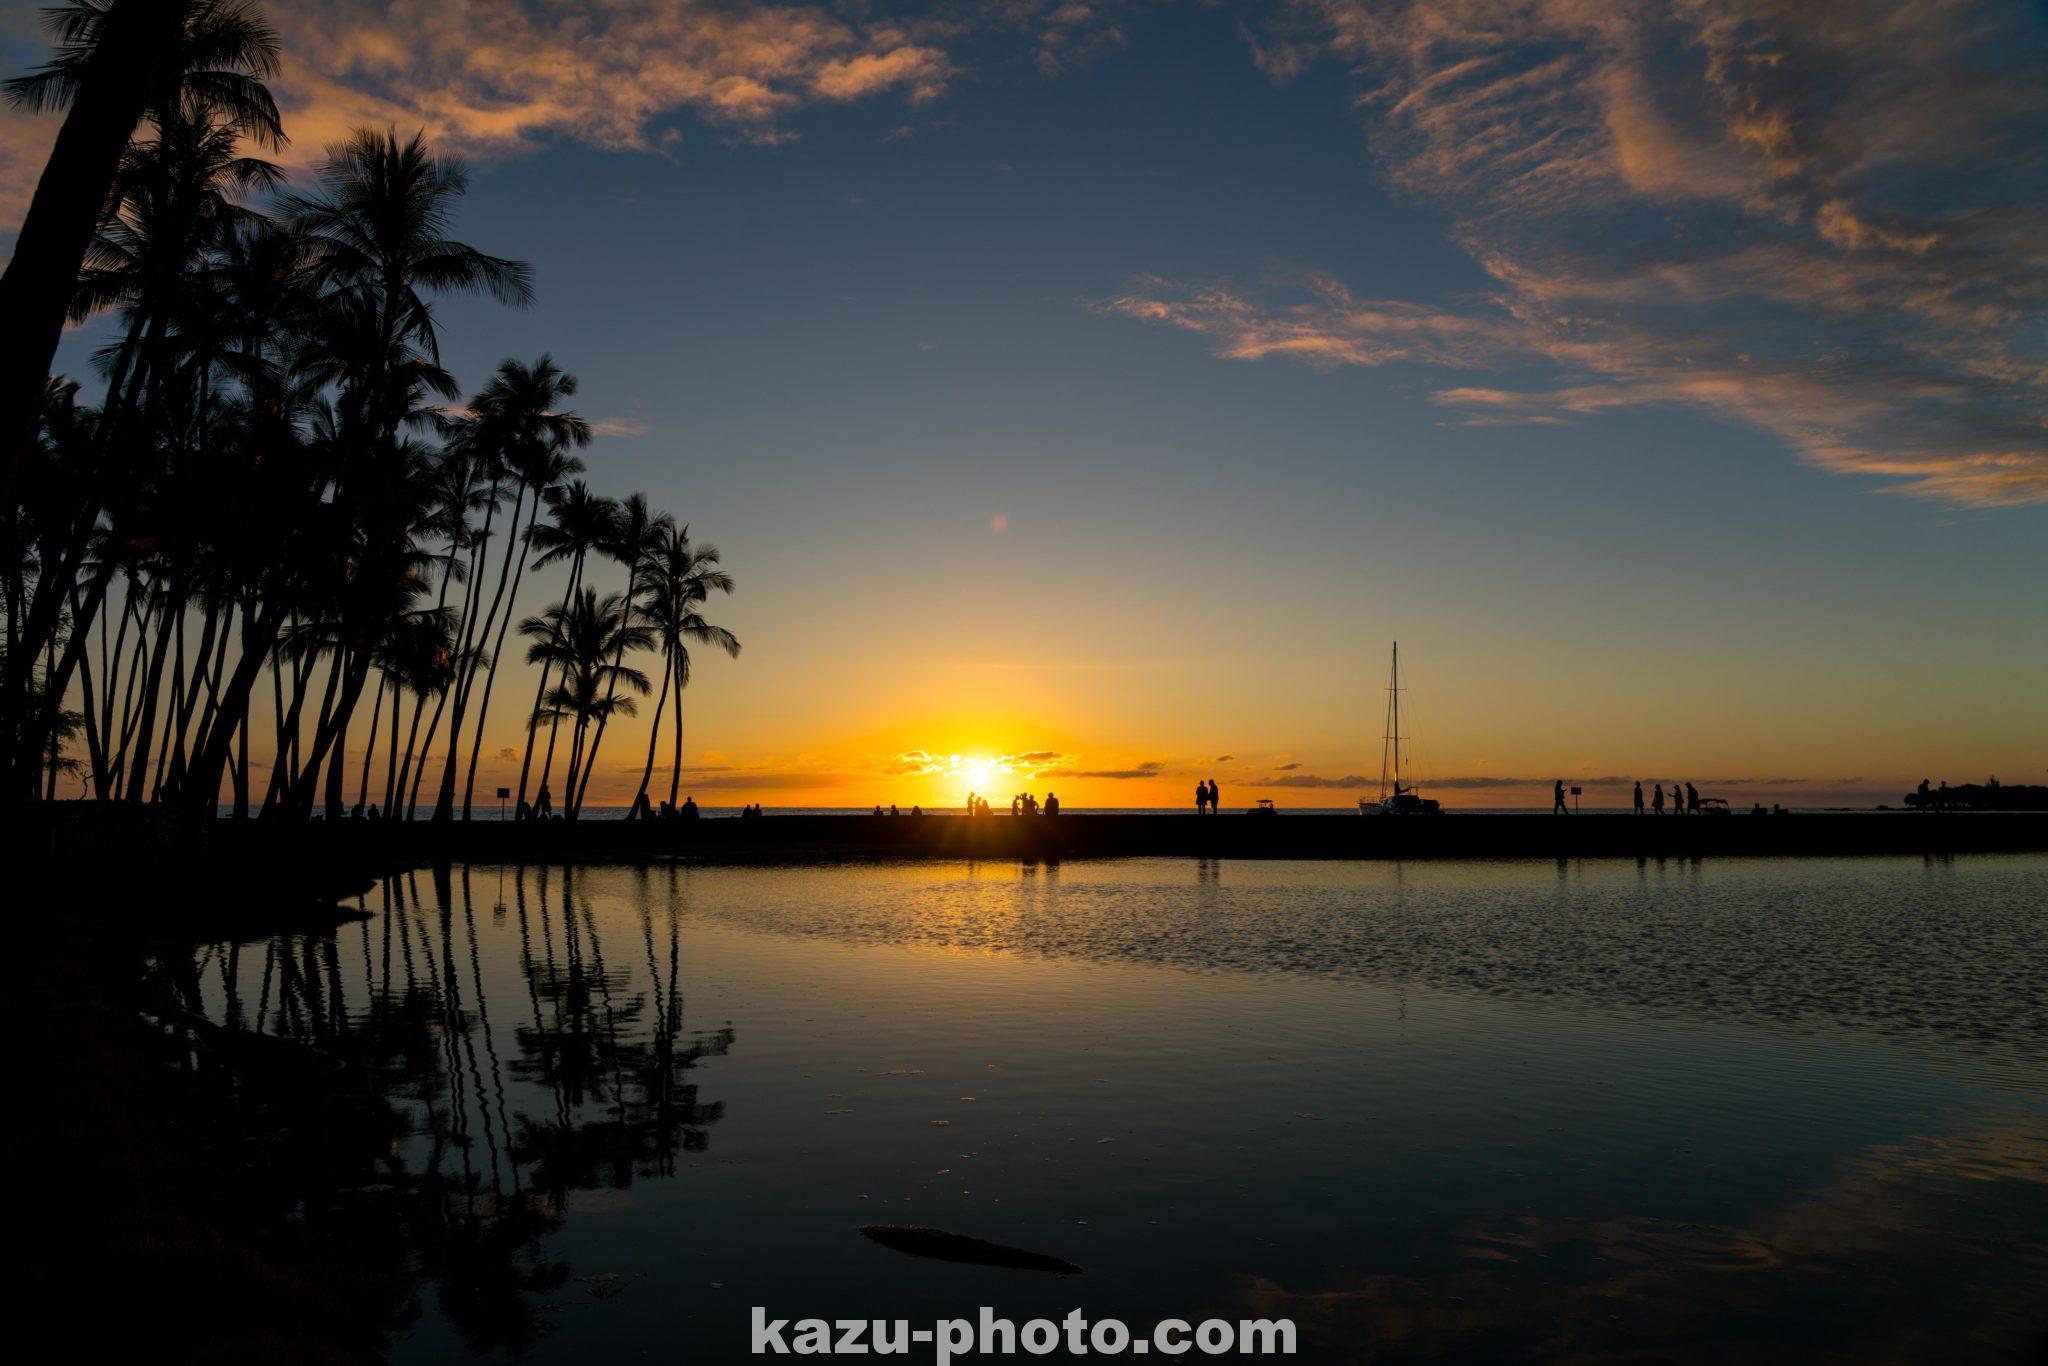 ハワイ島の絶景夕日スポット ワイコロアで撮影したサンセットの写真